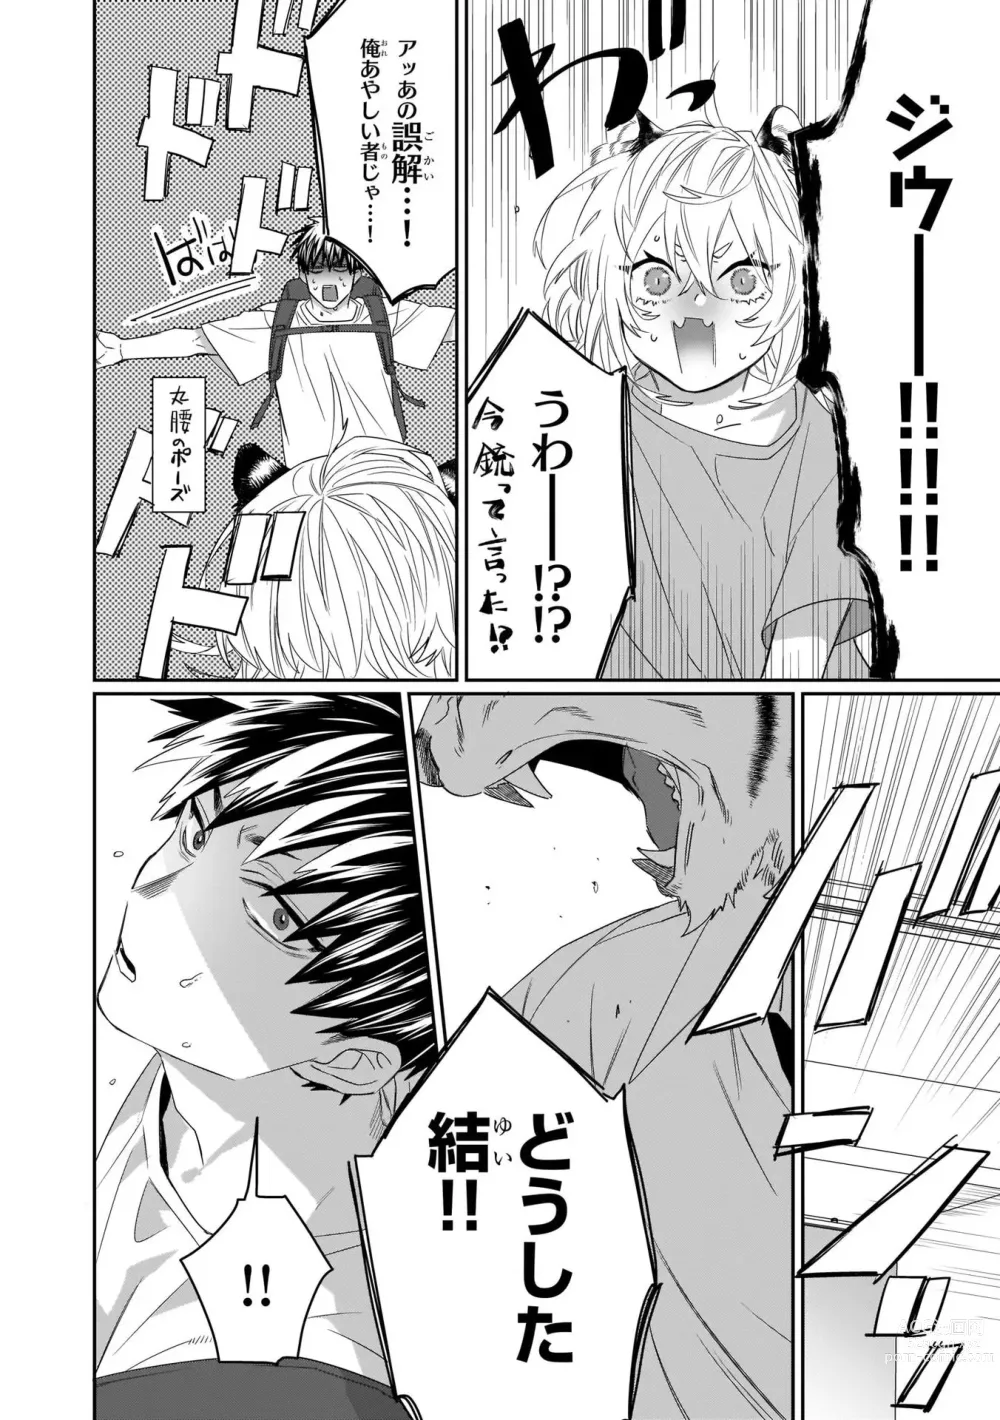 Page 8 of manga Torano Tantei Jimusho e Youkoso 1-5